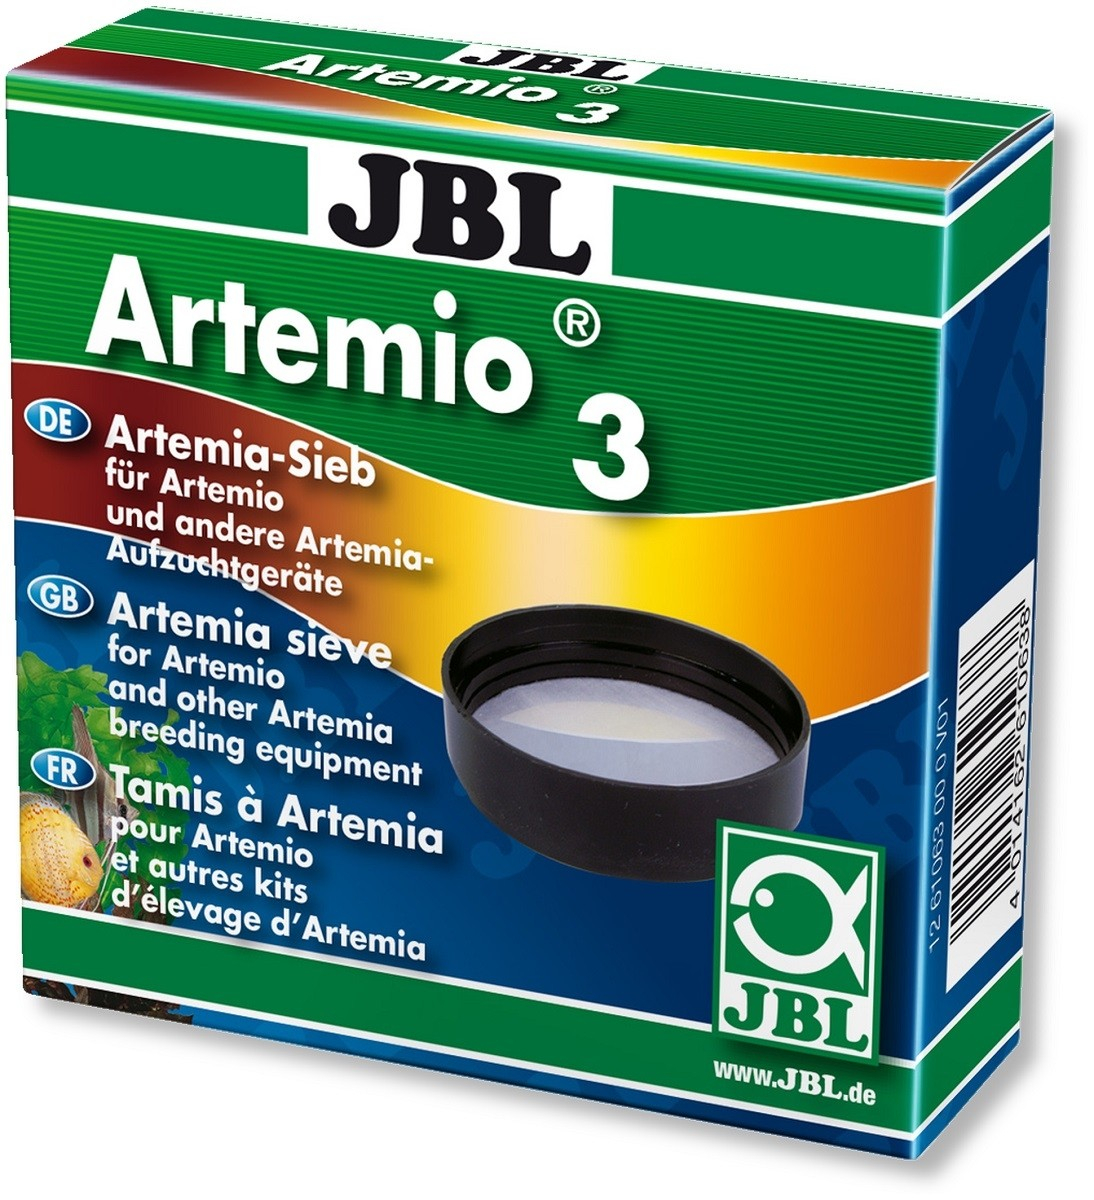 JBL Artemio 3 Sieb für Artemien